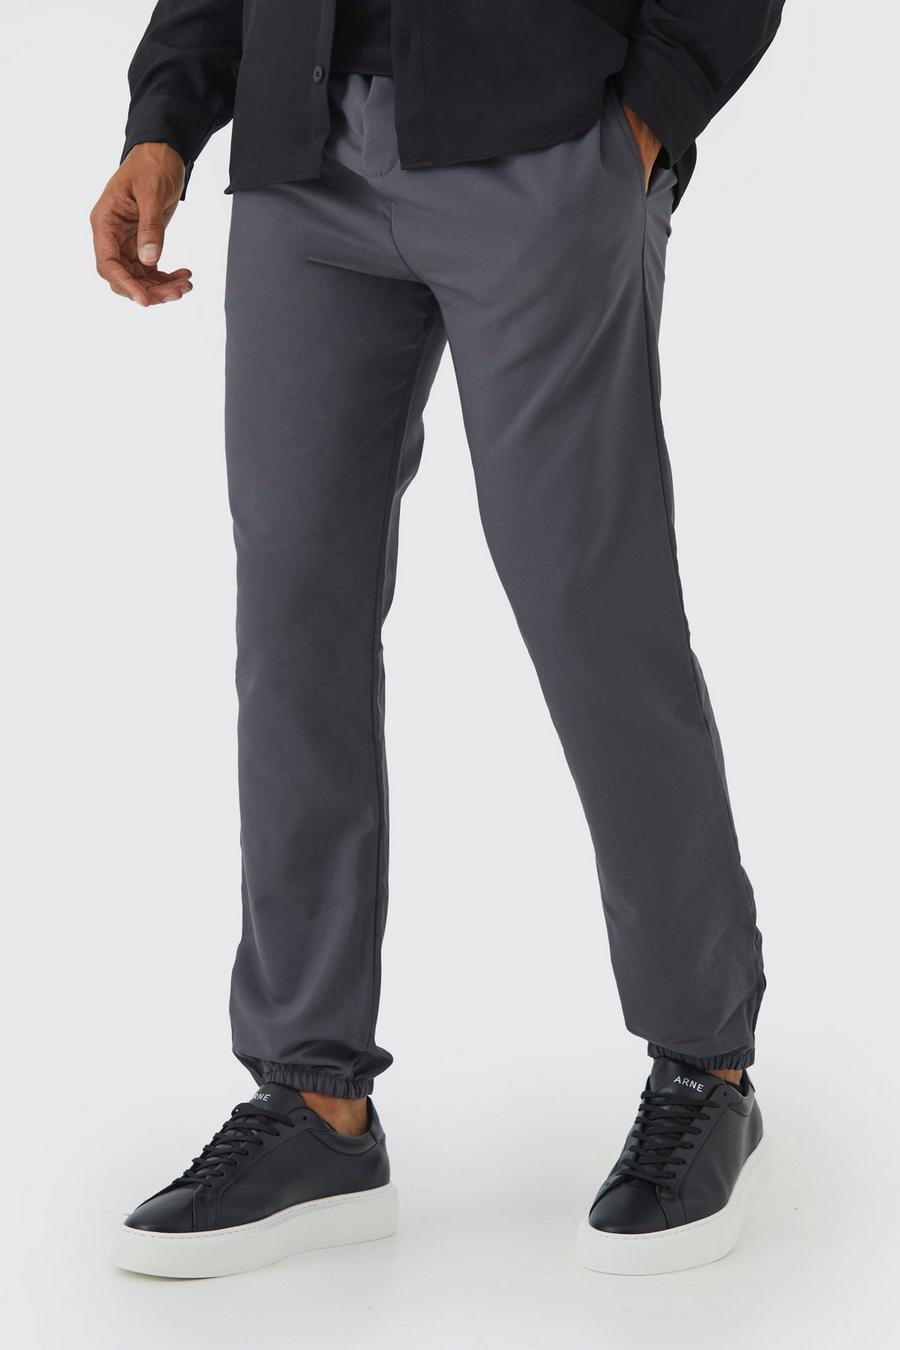 Pantalon stretch slim, Charcoal grey